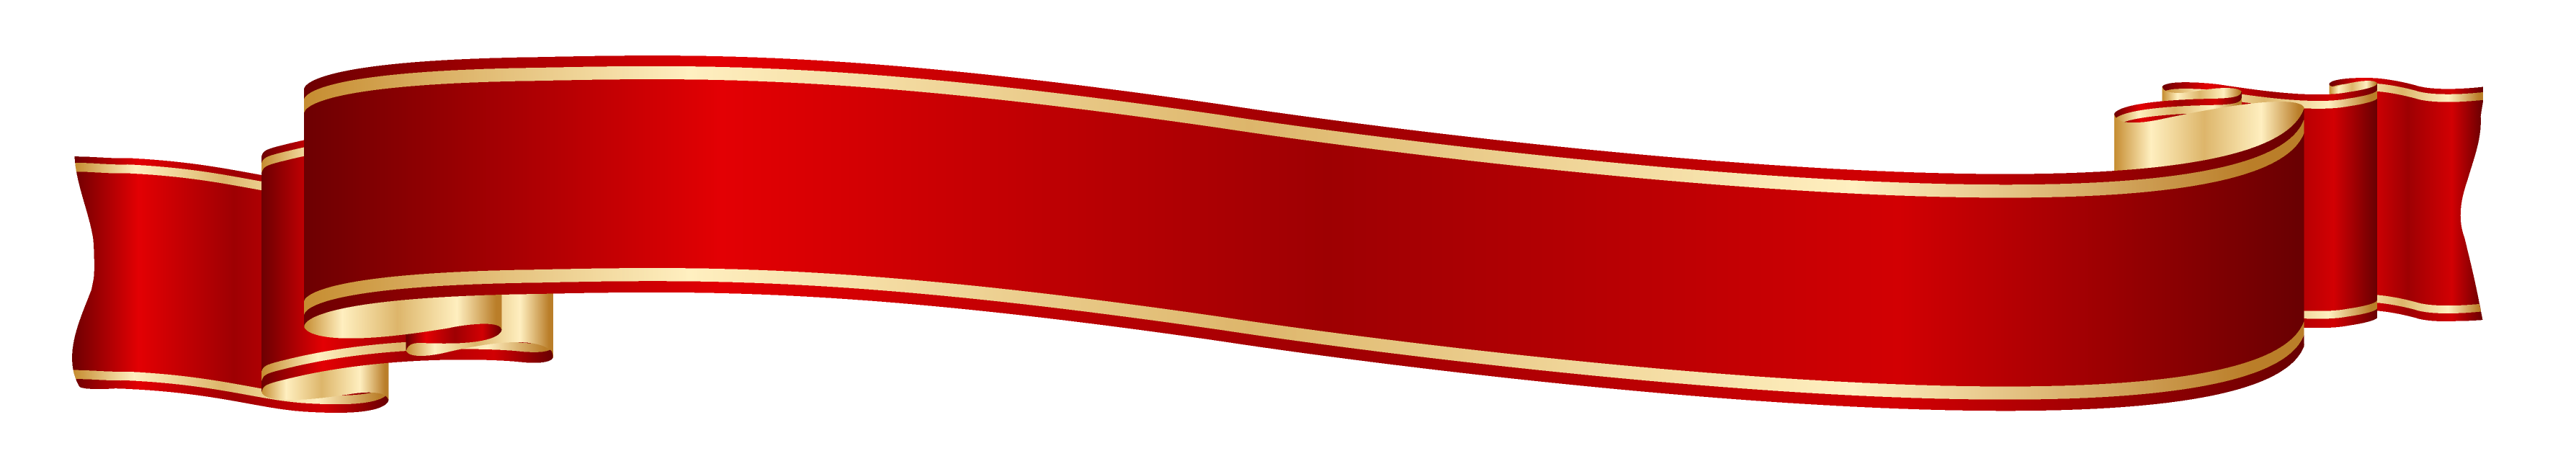 Immagine del PNG del nastro rosso